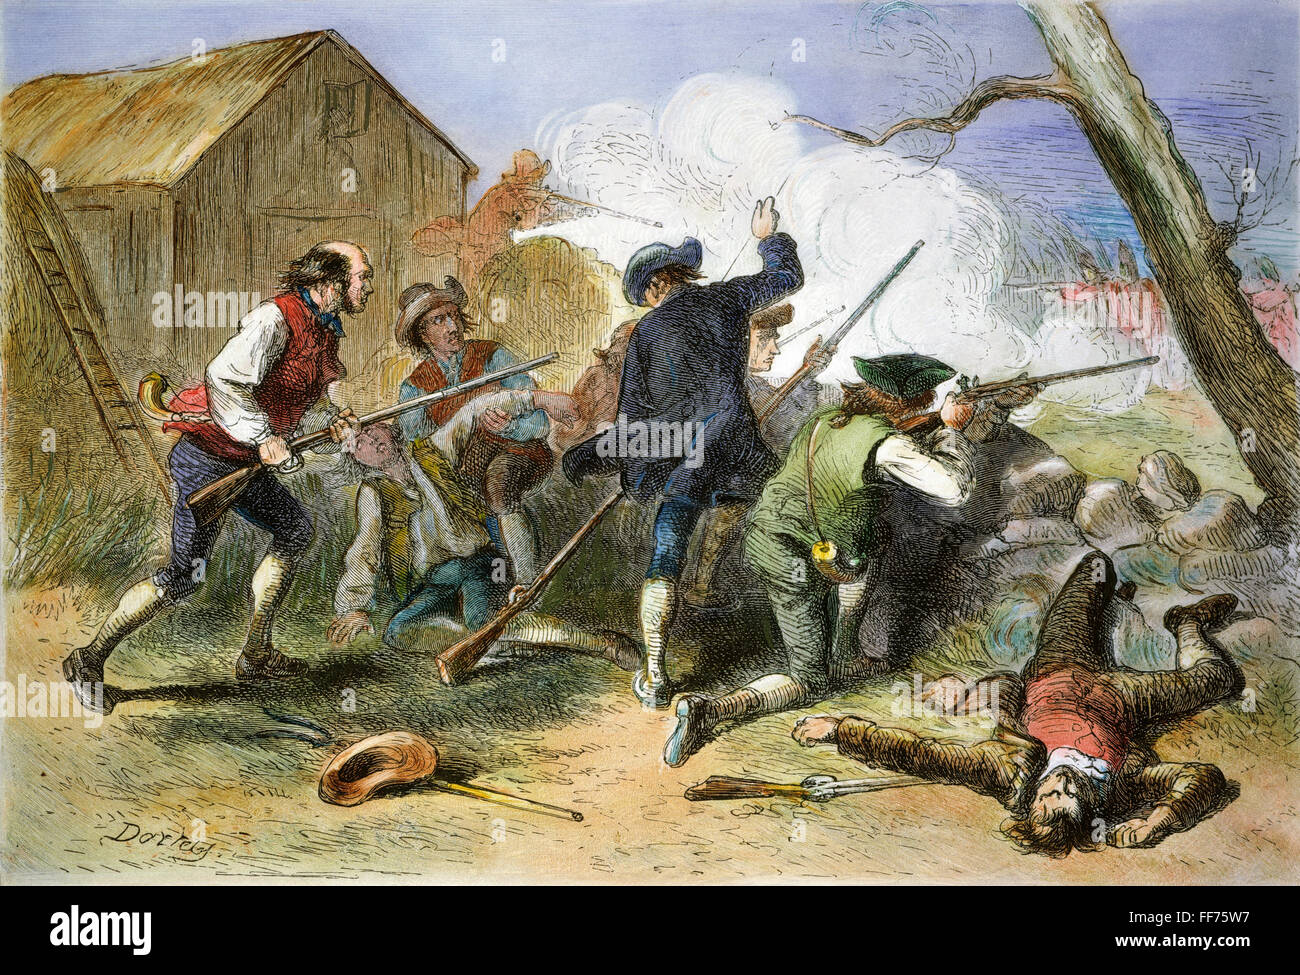 Bataille de Lexington, 1775. /N19 avril 1775. Gravure couleur, 19e siècle. Banque D'Images